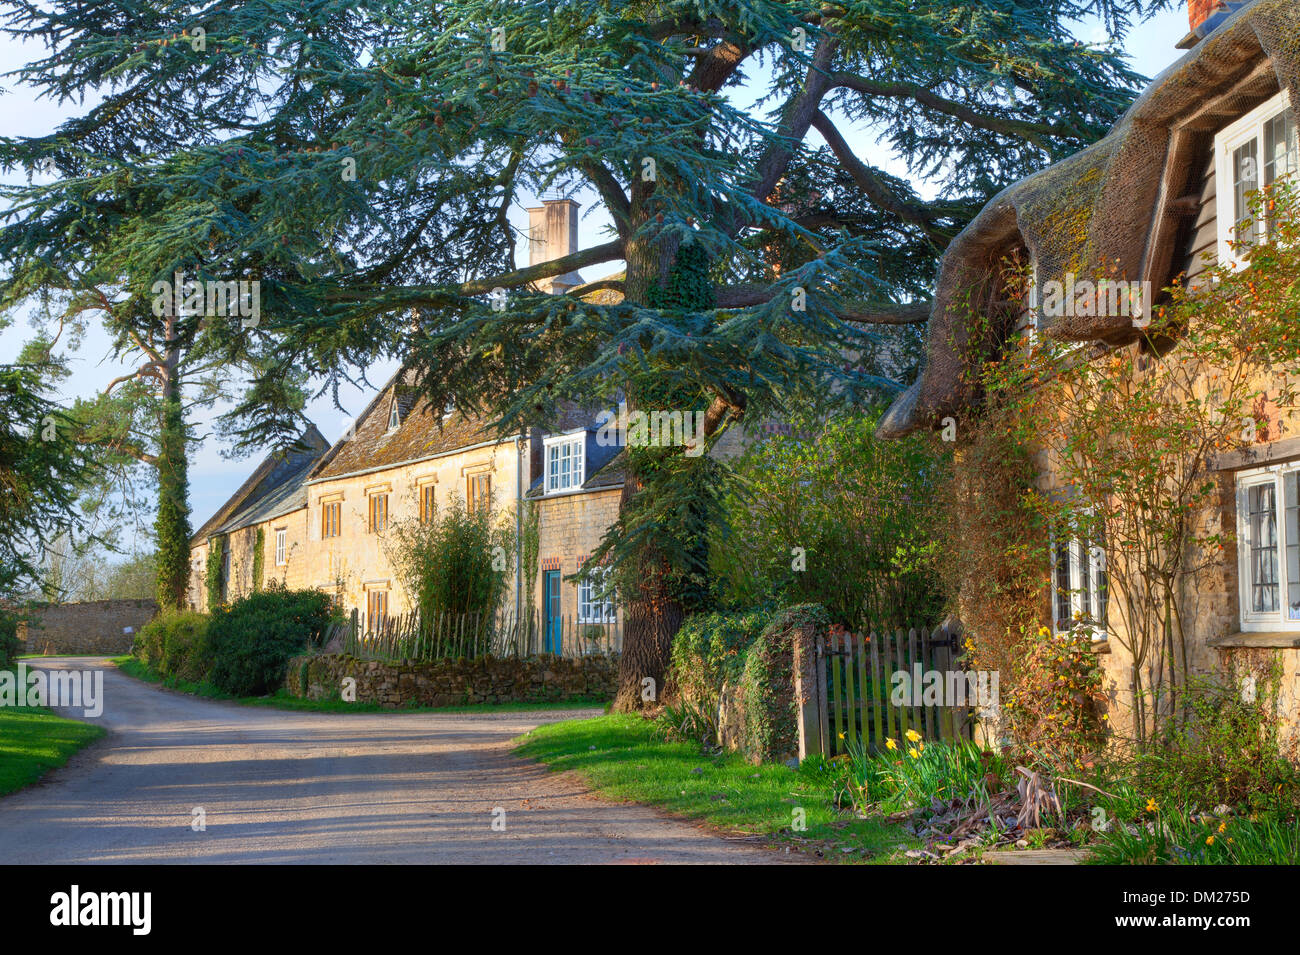 Le petit village de Hidcote Bartrim près de jardins Hidcote, Chipping Campden, Gloucestershire, Angleterre. Banque D'Images